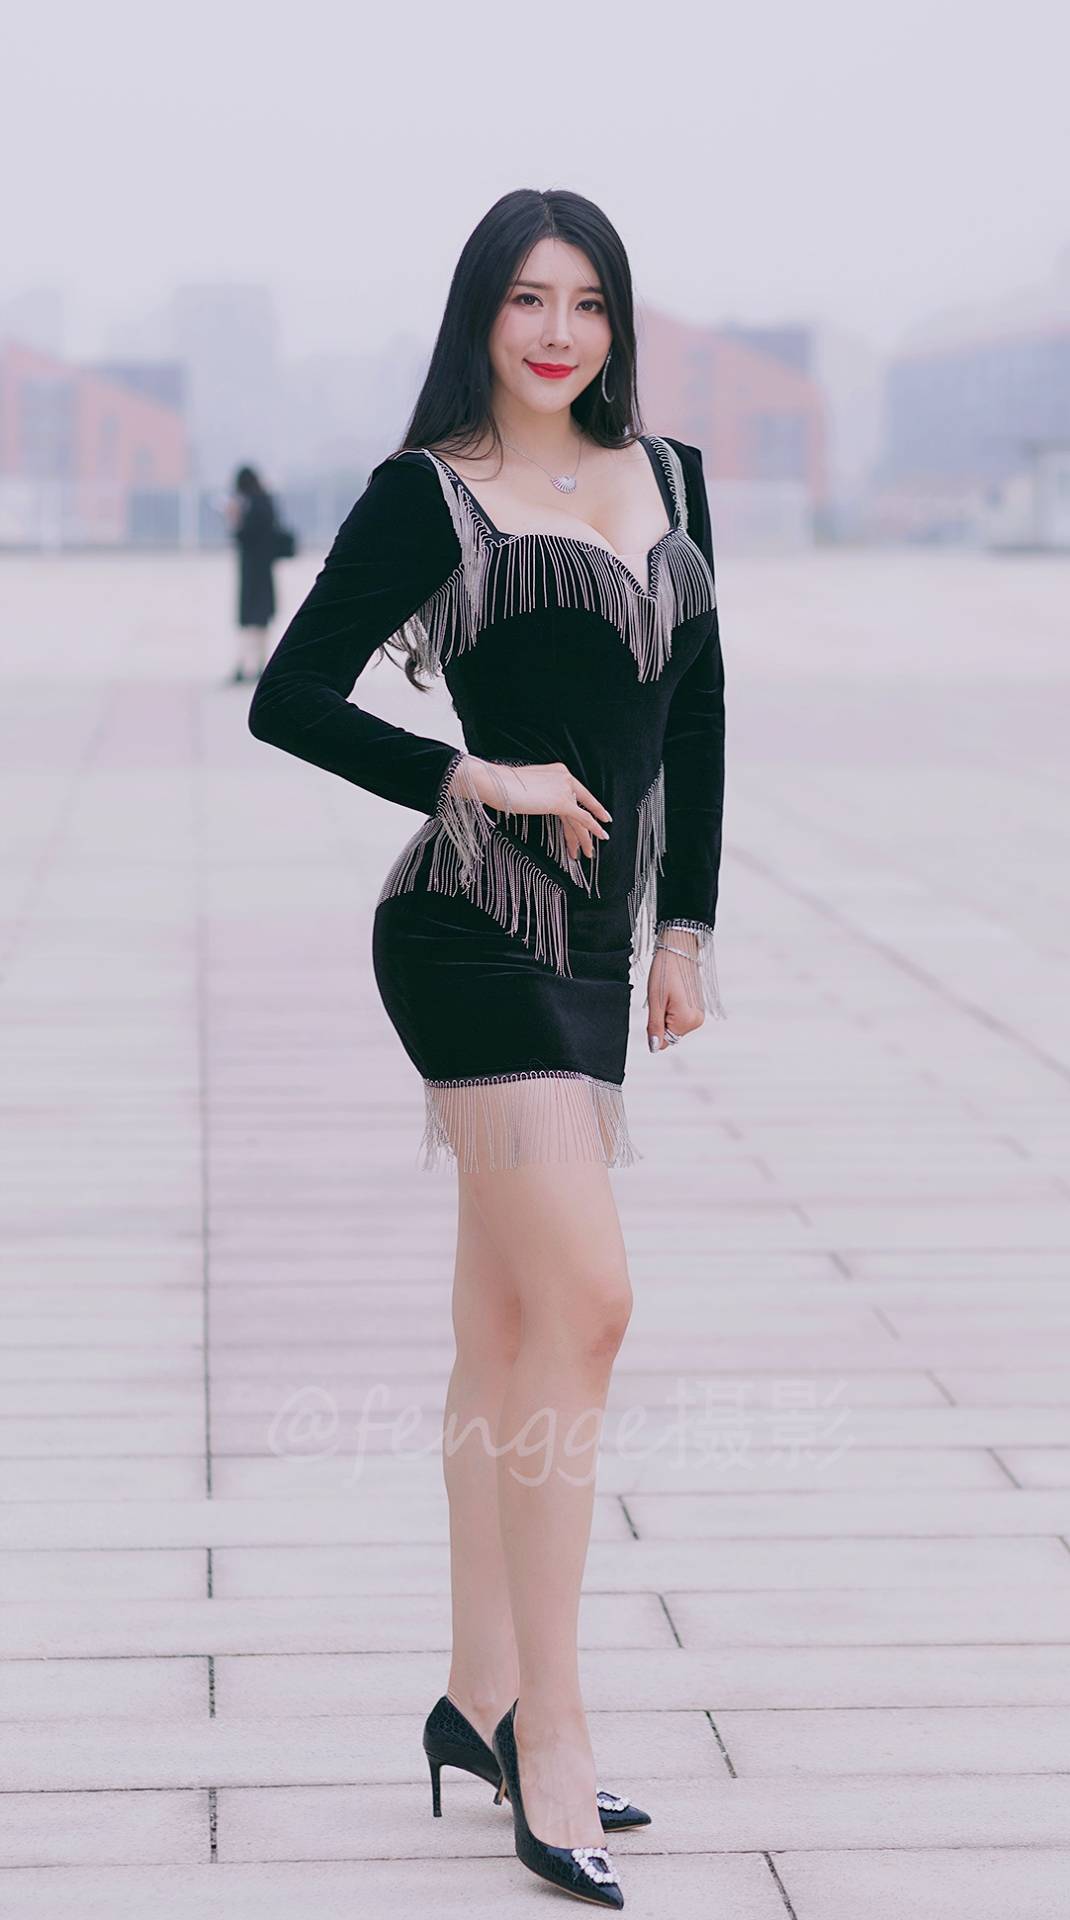 偶遇健身圈的美女网红刘太阳,时尚气质身材棒!